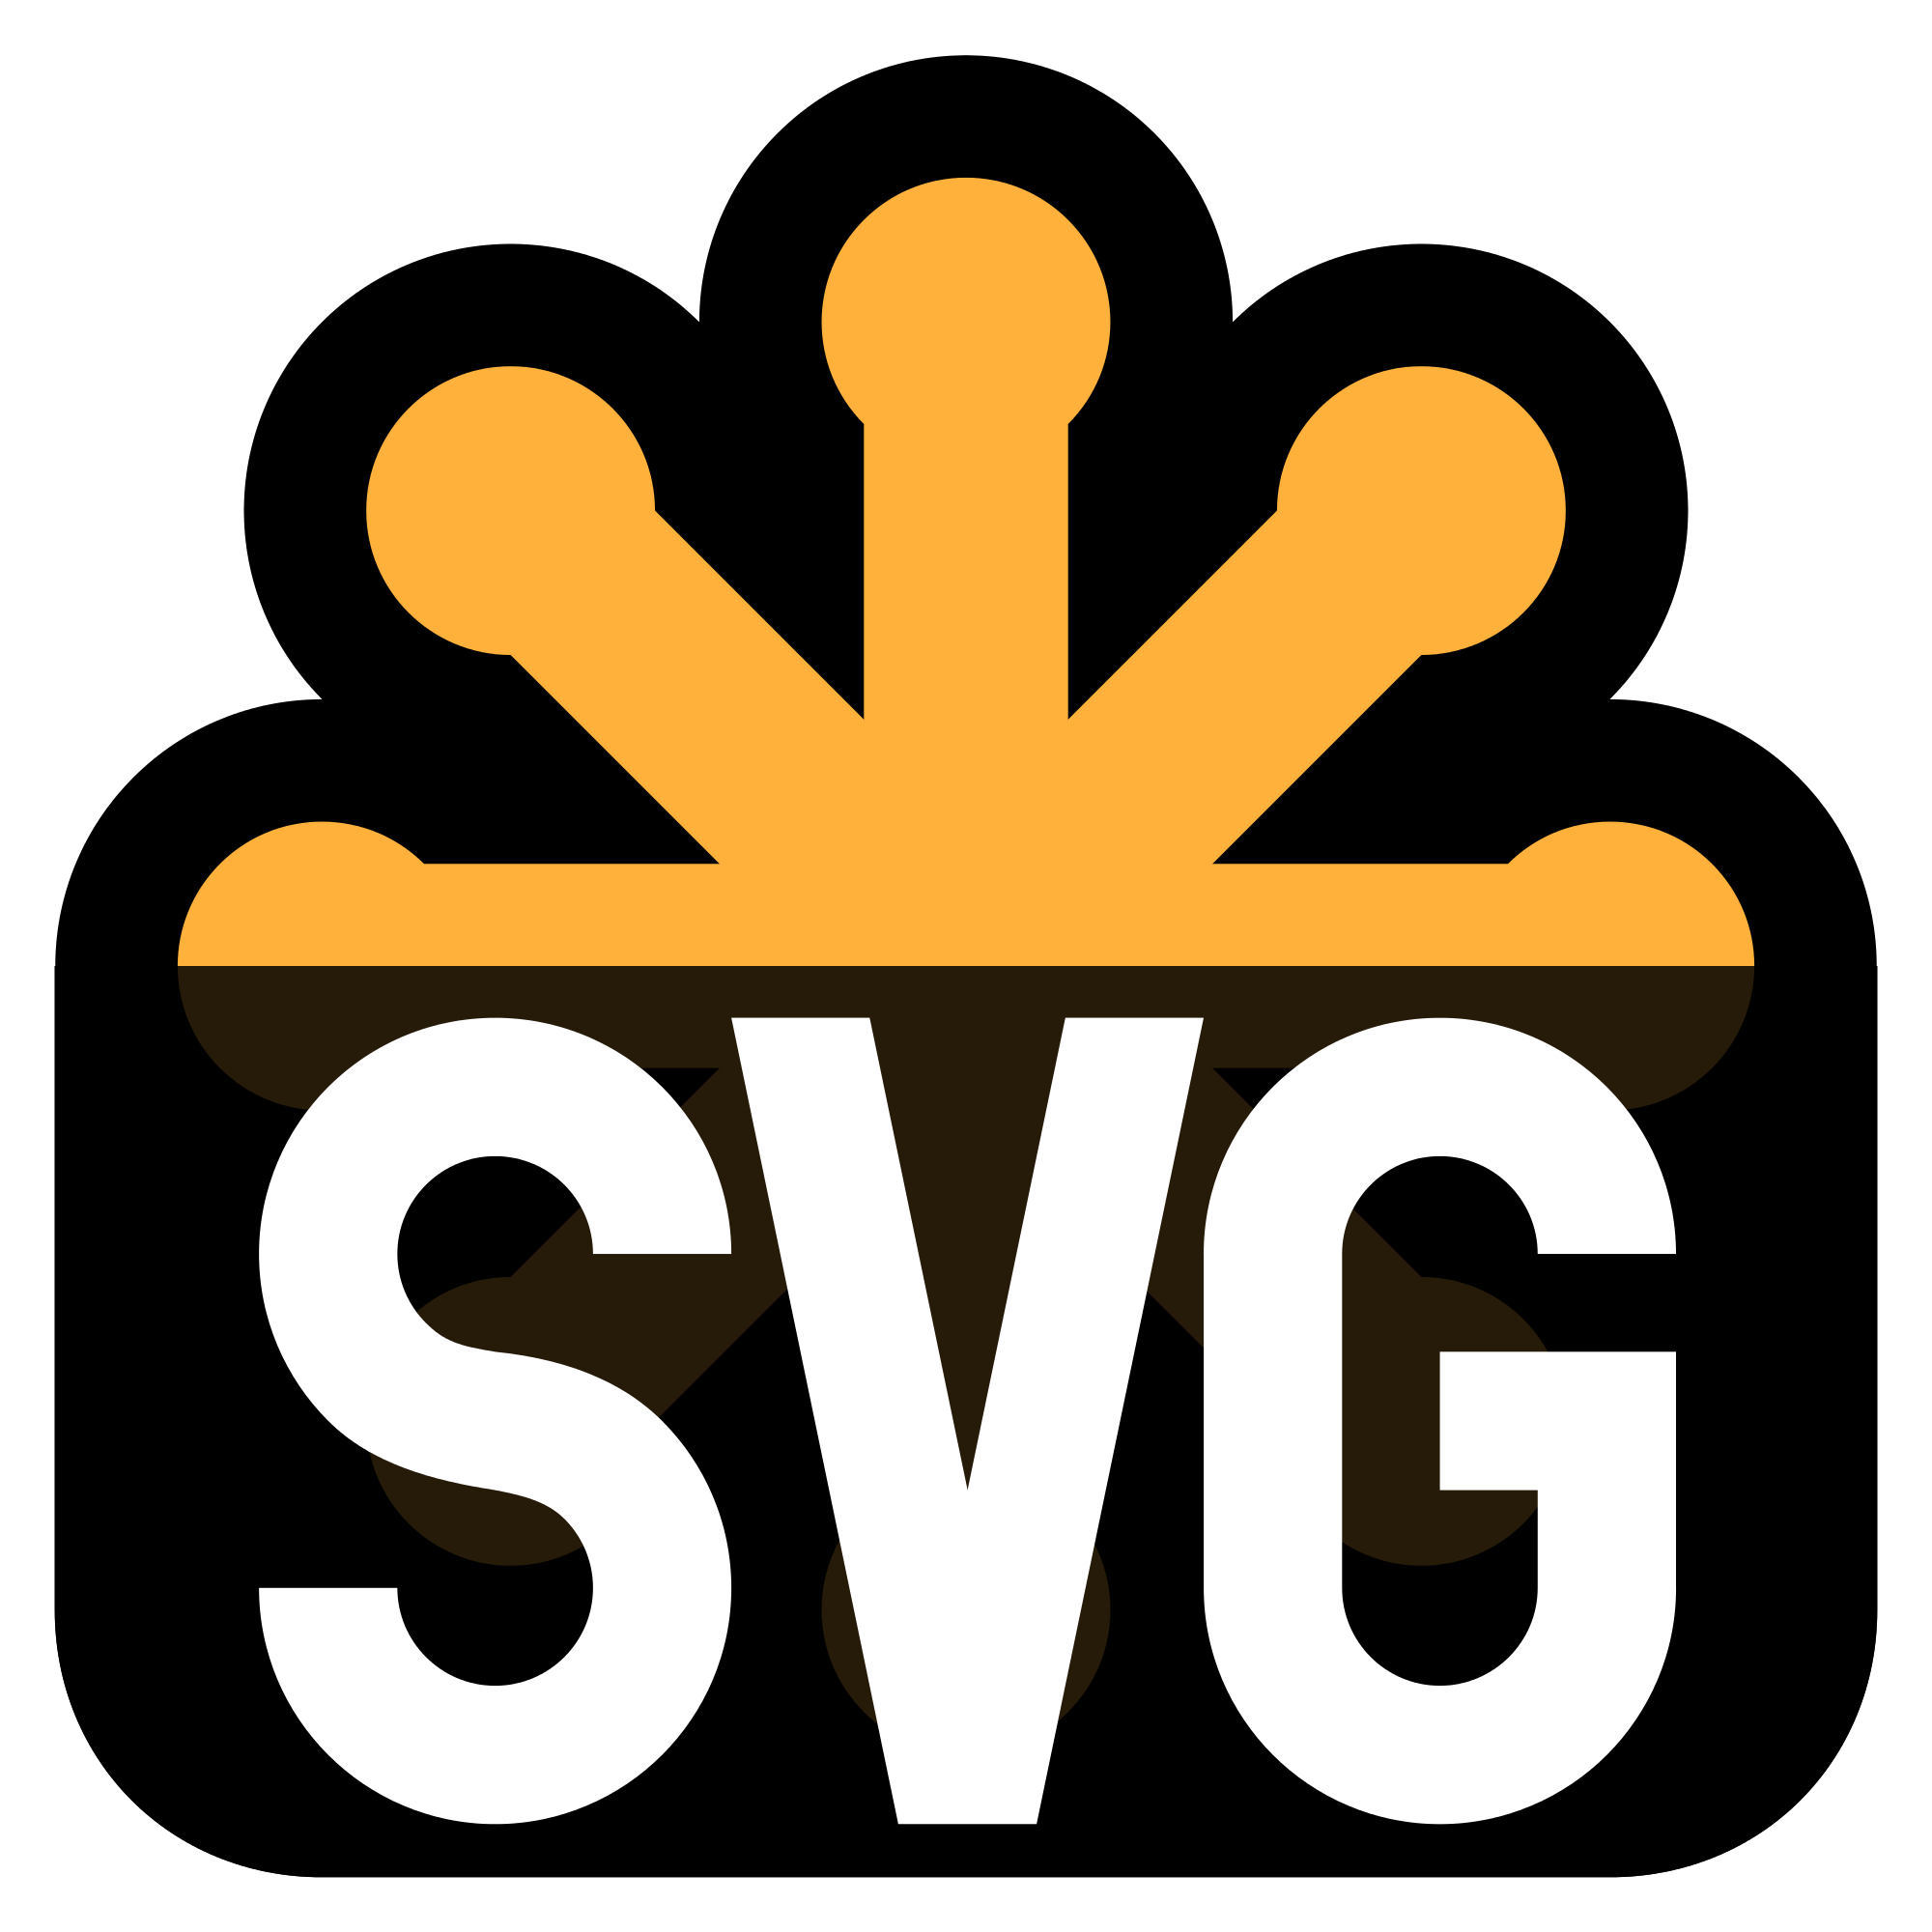 SVG Logo - File:SVG Logo.svg - Wikimedia Commons